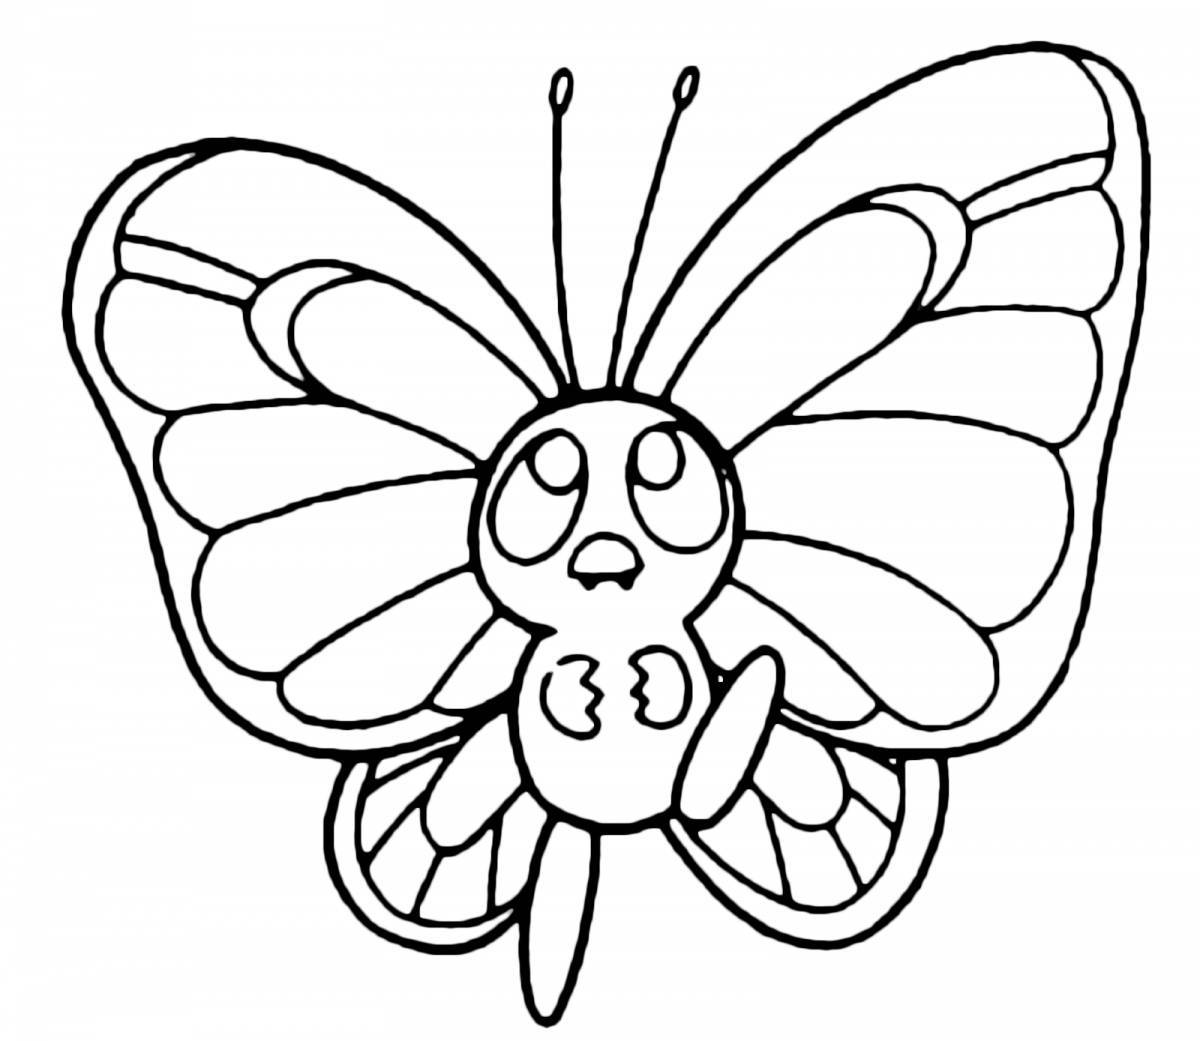 Королевская бабочка раскраски для детей 6-7 лет